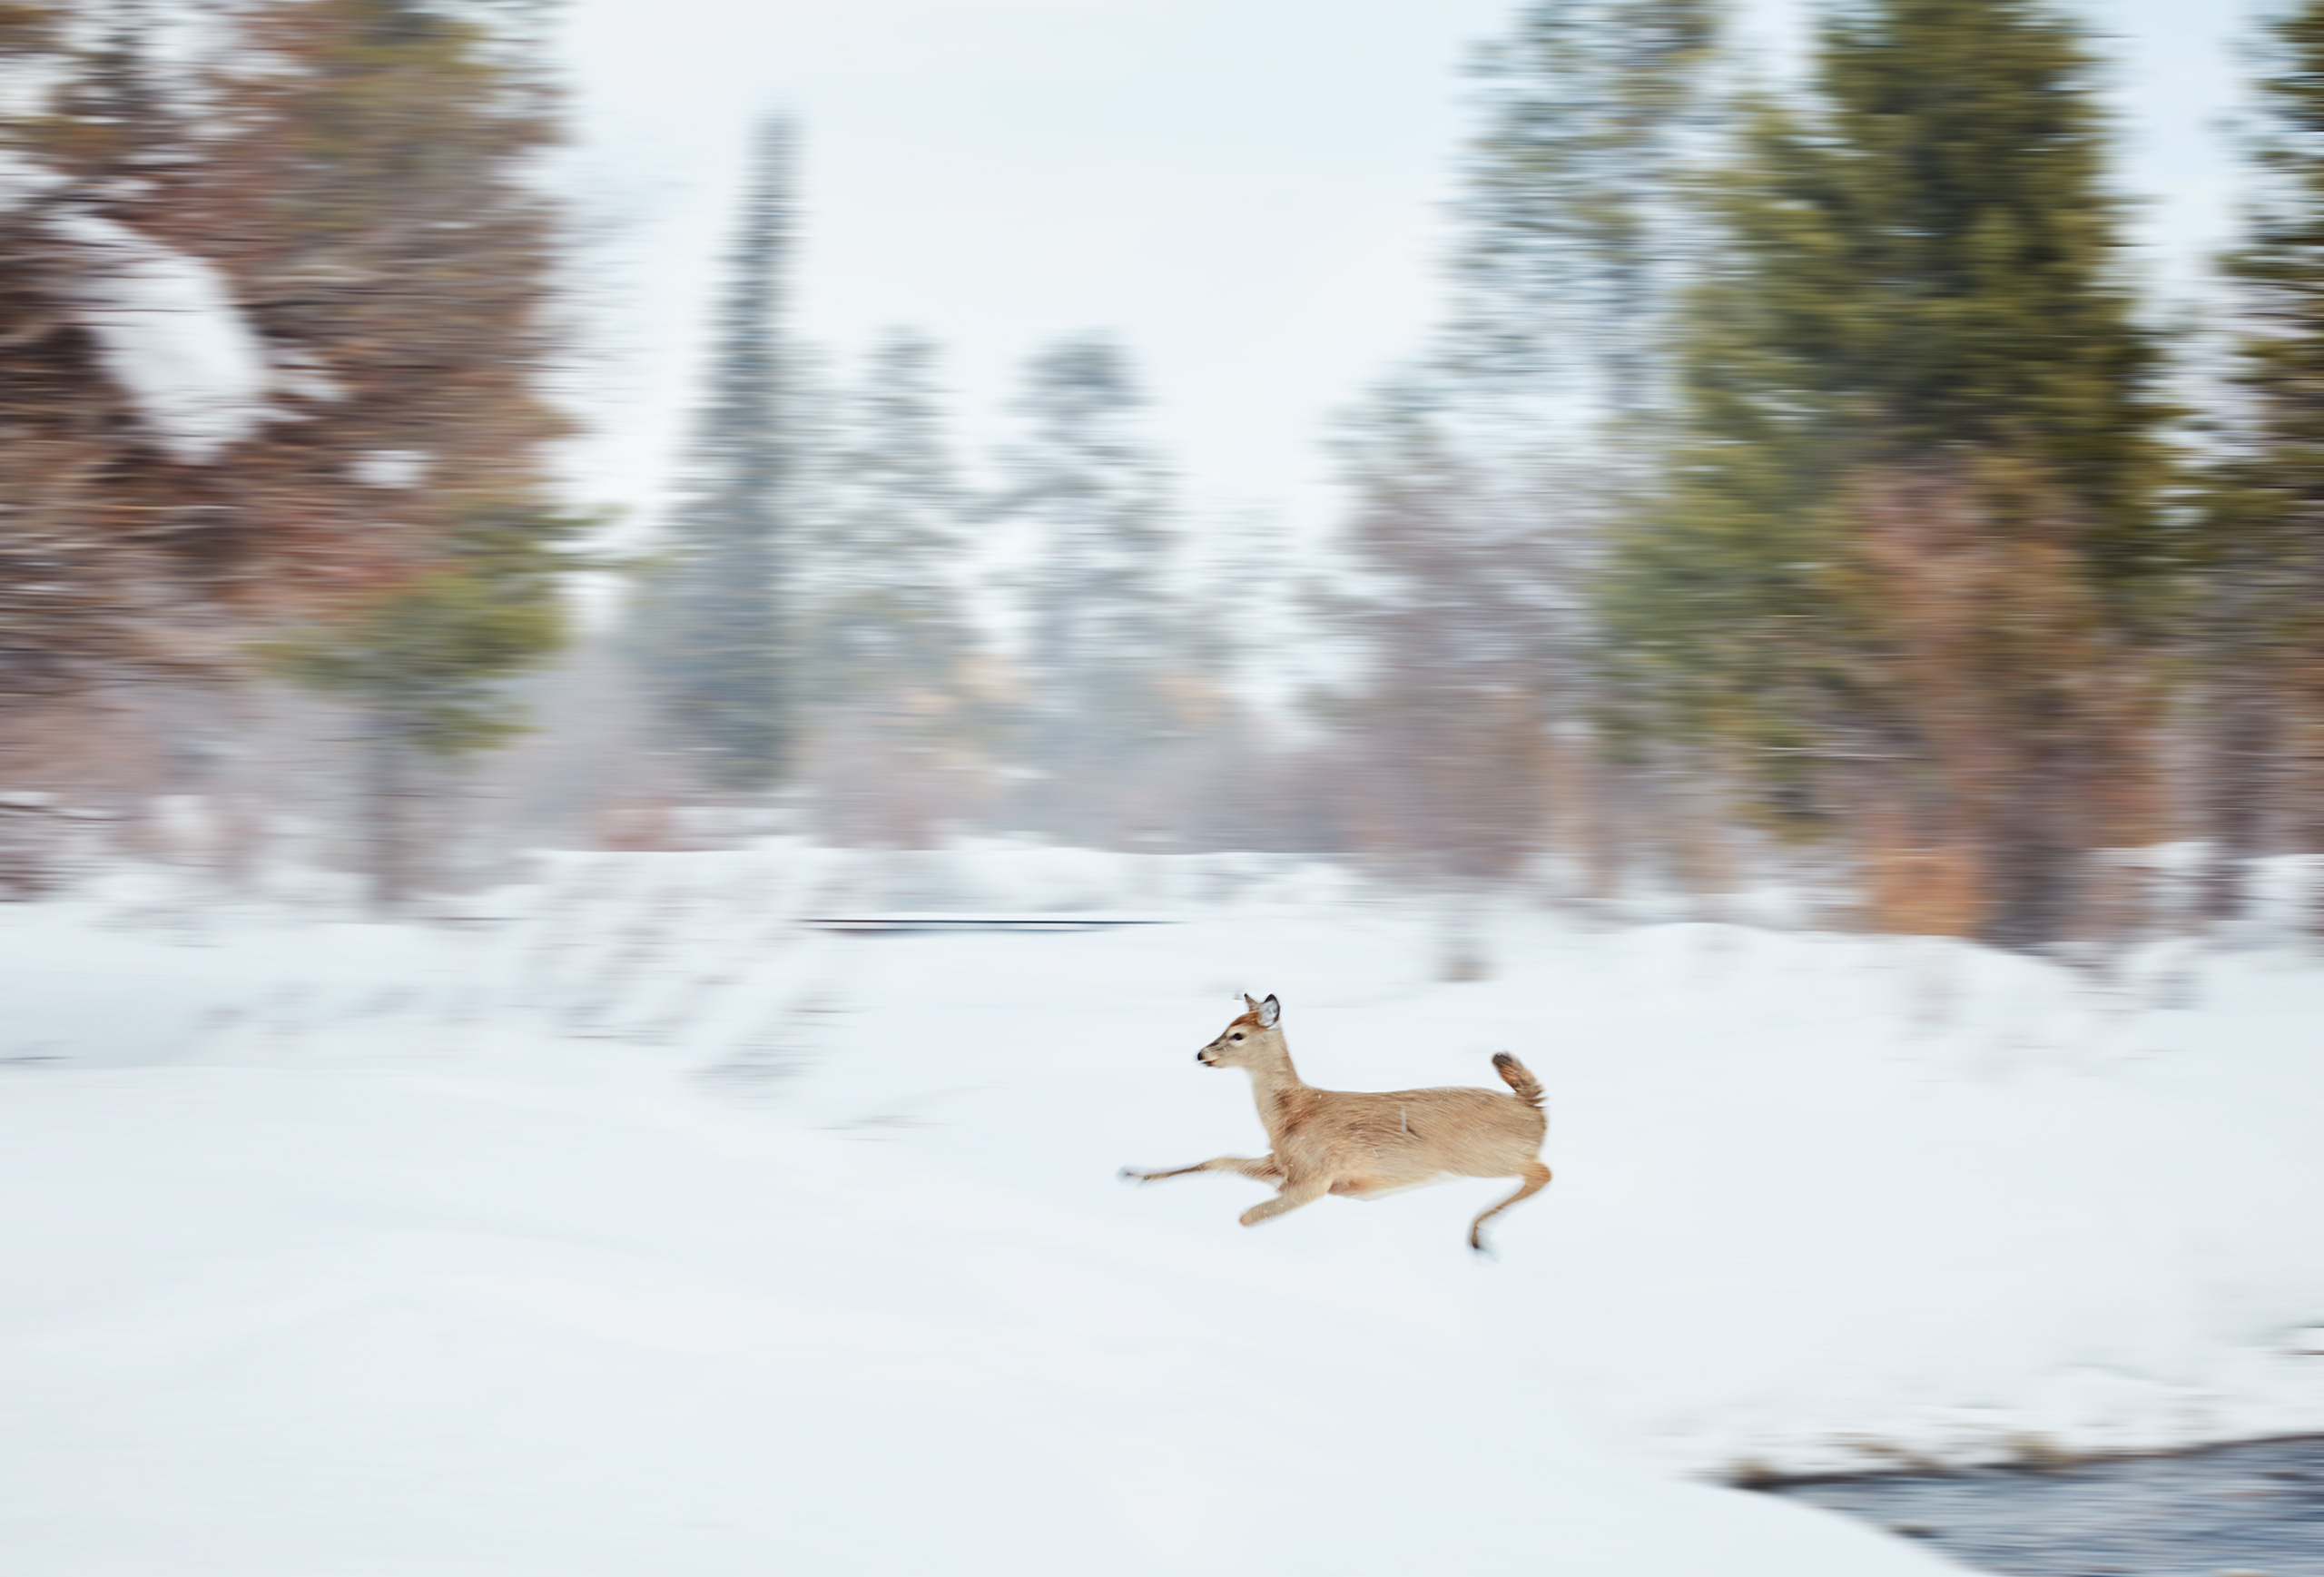 deer jumping over creek in wilson wyoming